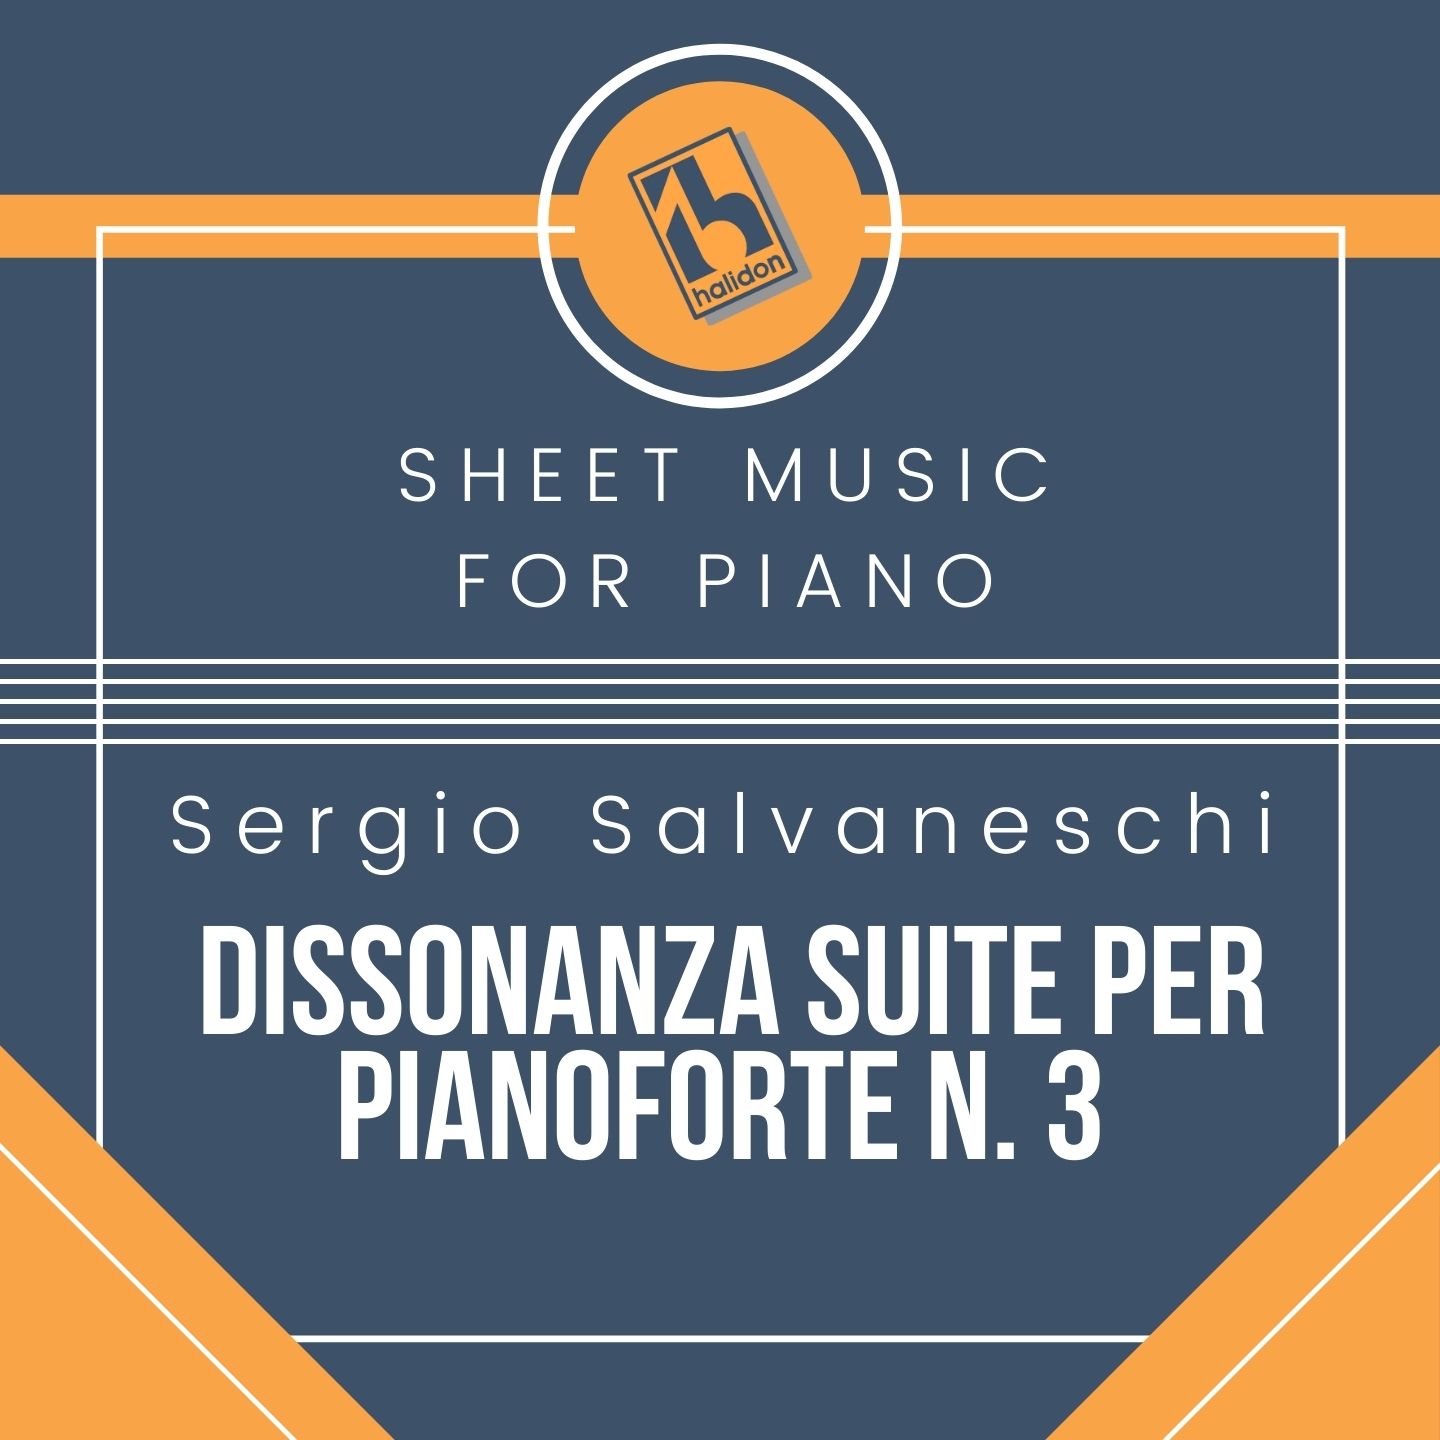 Sergio Salvaneschi - Dissonanza n. 3 - Suite per Pianoforte